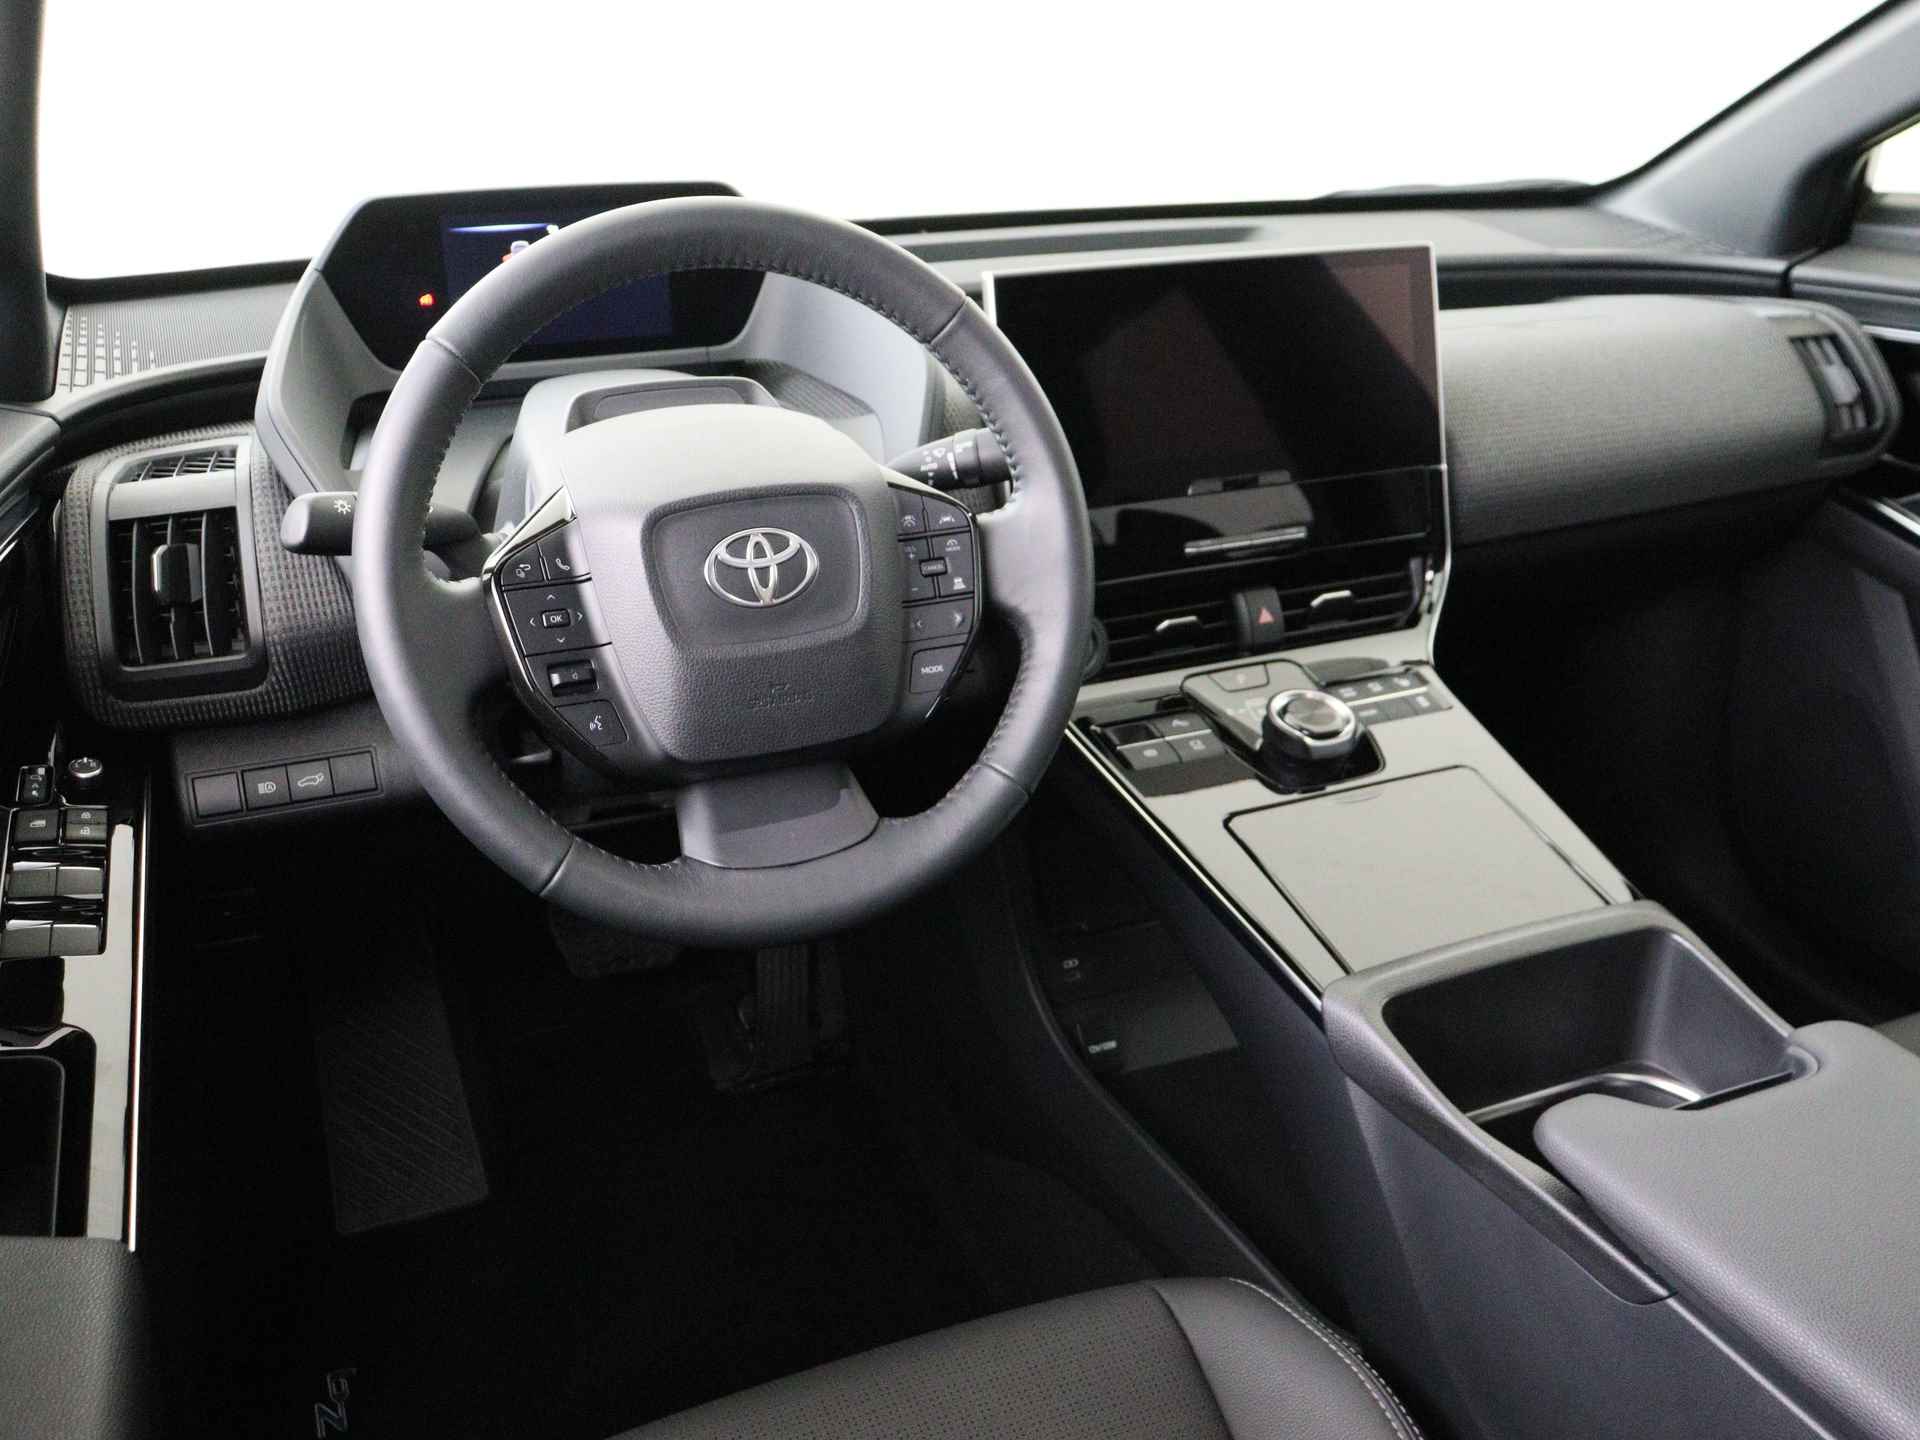 Toyota Bz4x Launch Edition Premium Bi-Tone uitvoering | Navigatie | Stoel&stuur verwarming | My T app | Panoramadak | Wegenbelasting vrij | Subsidie €2000,- aanvraag mogelijk. - 5/48